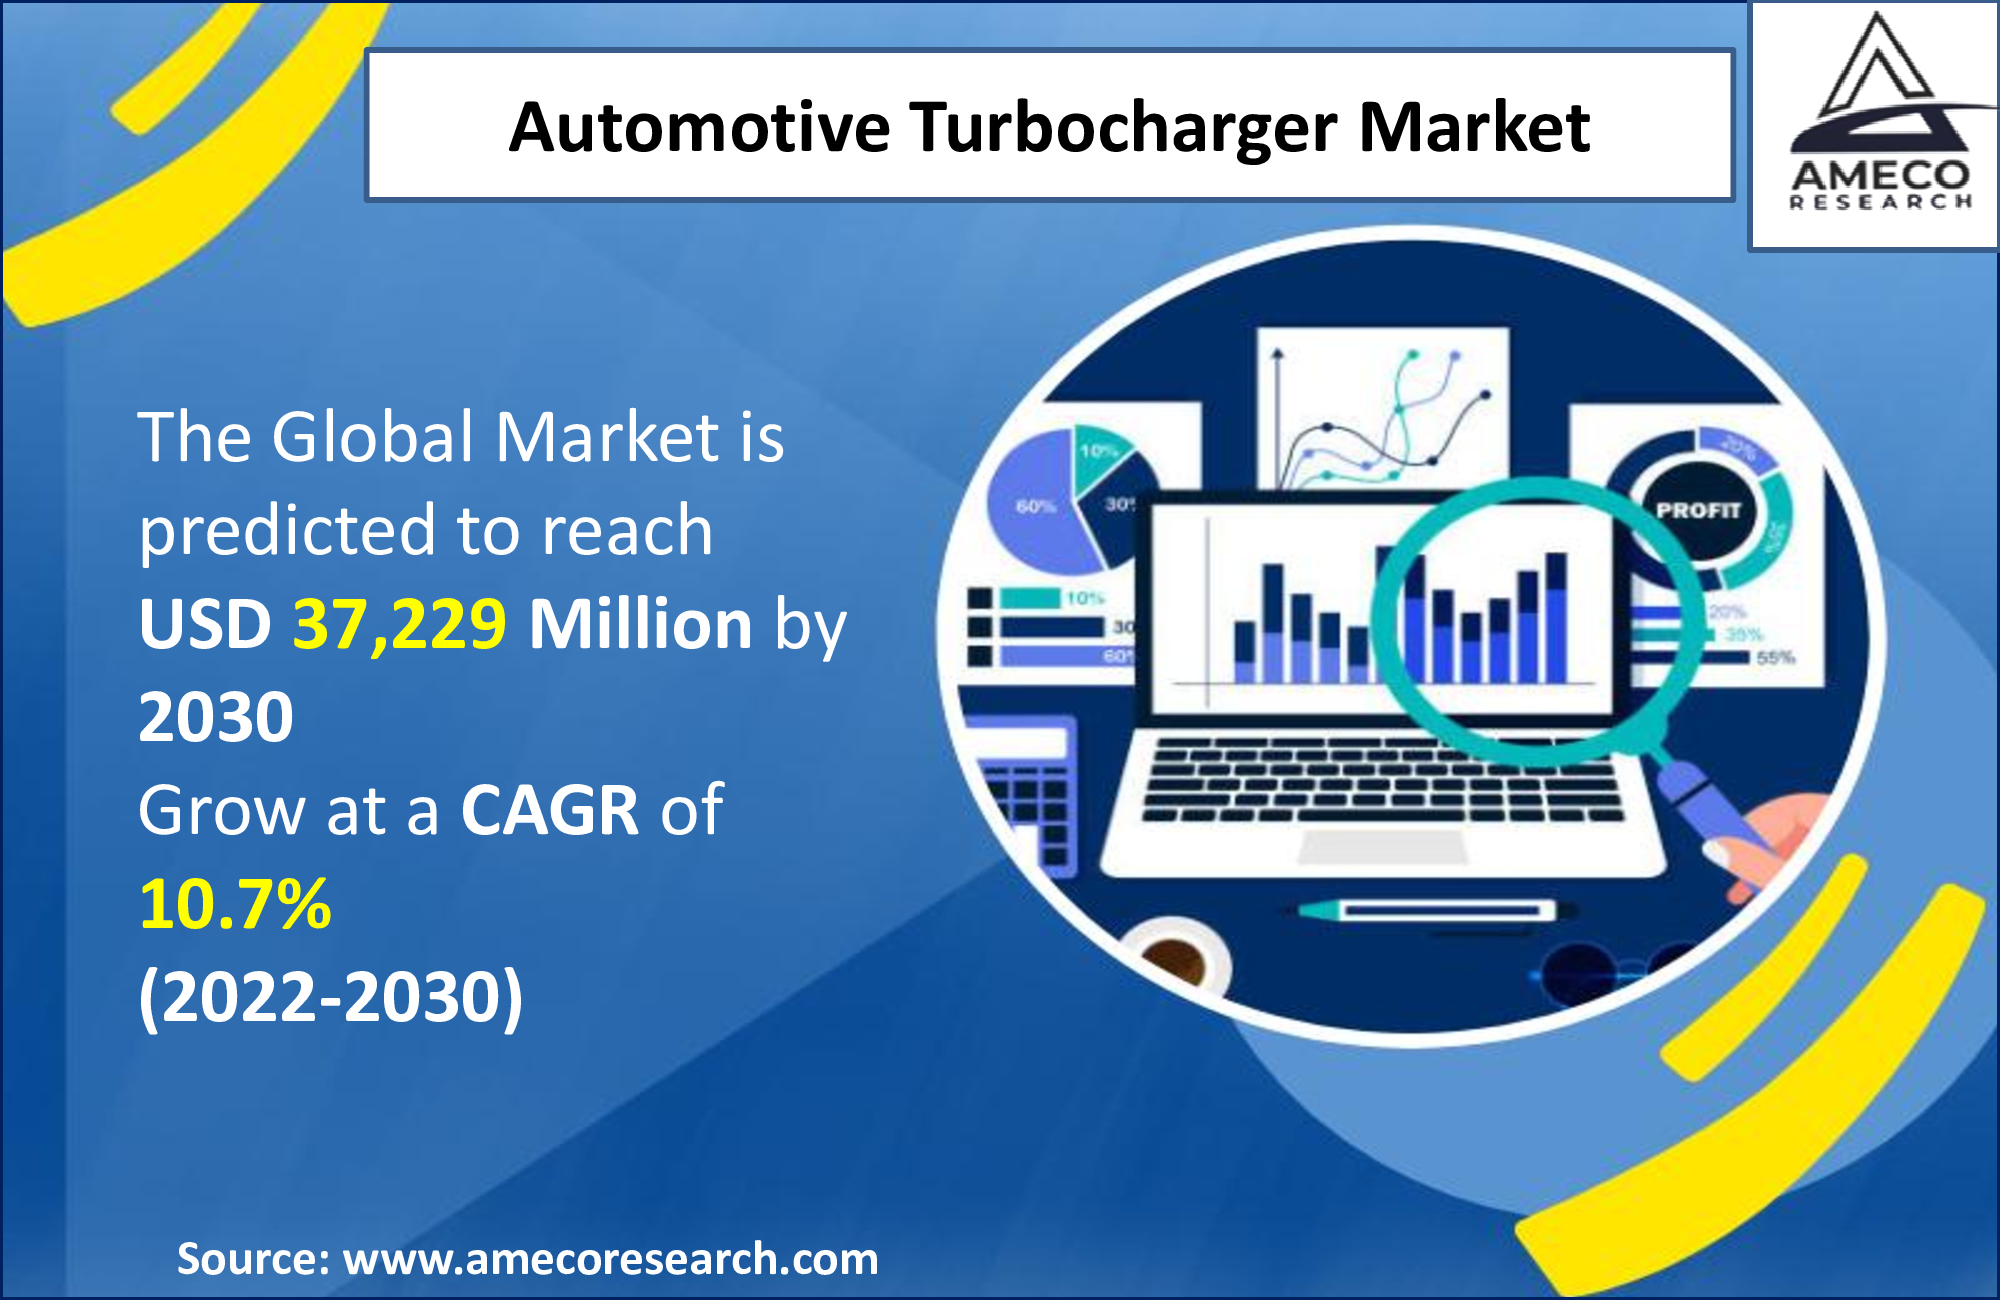 utomotive Turbocharger Market